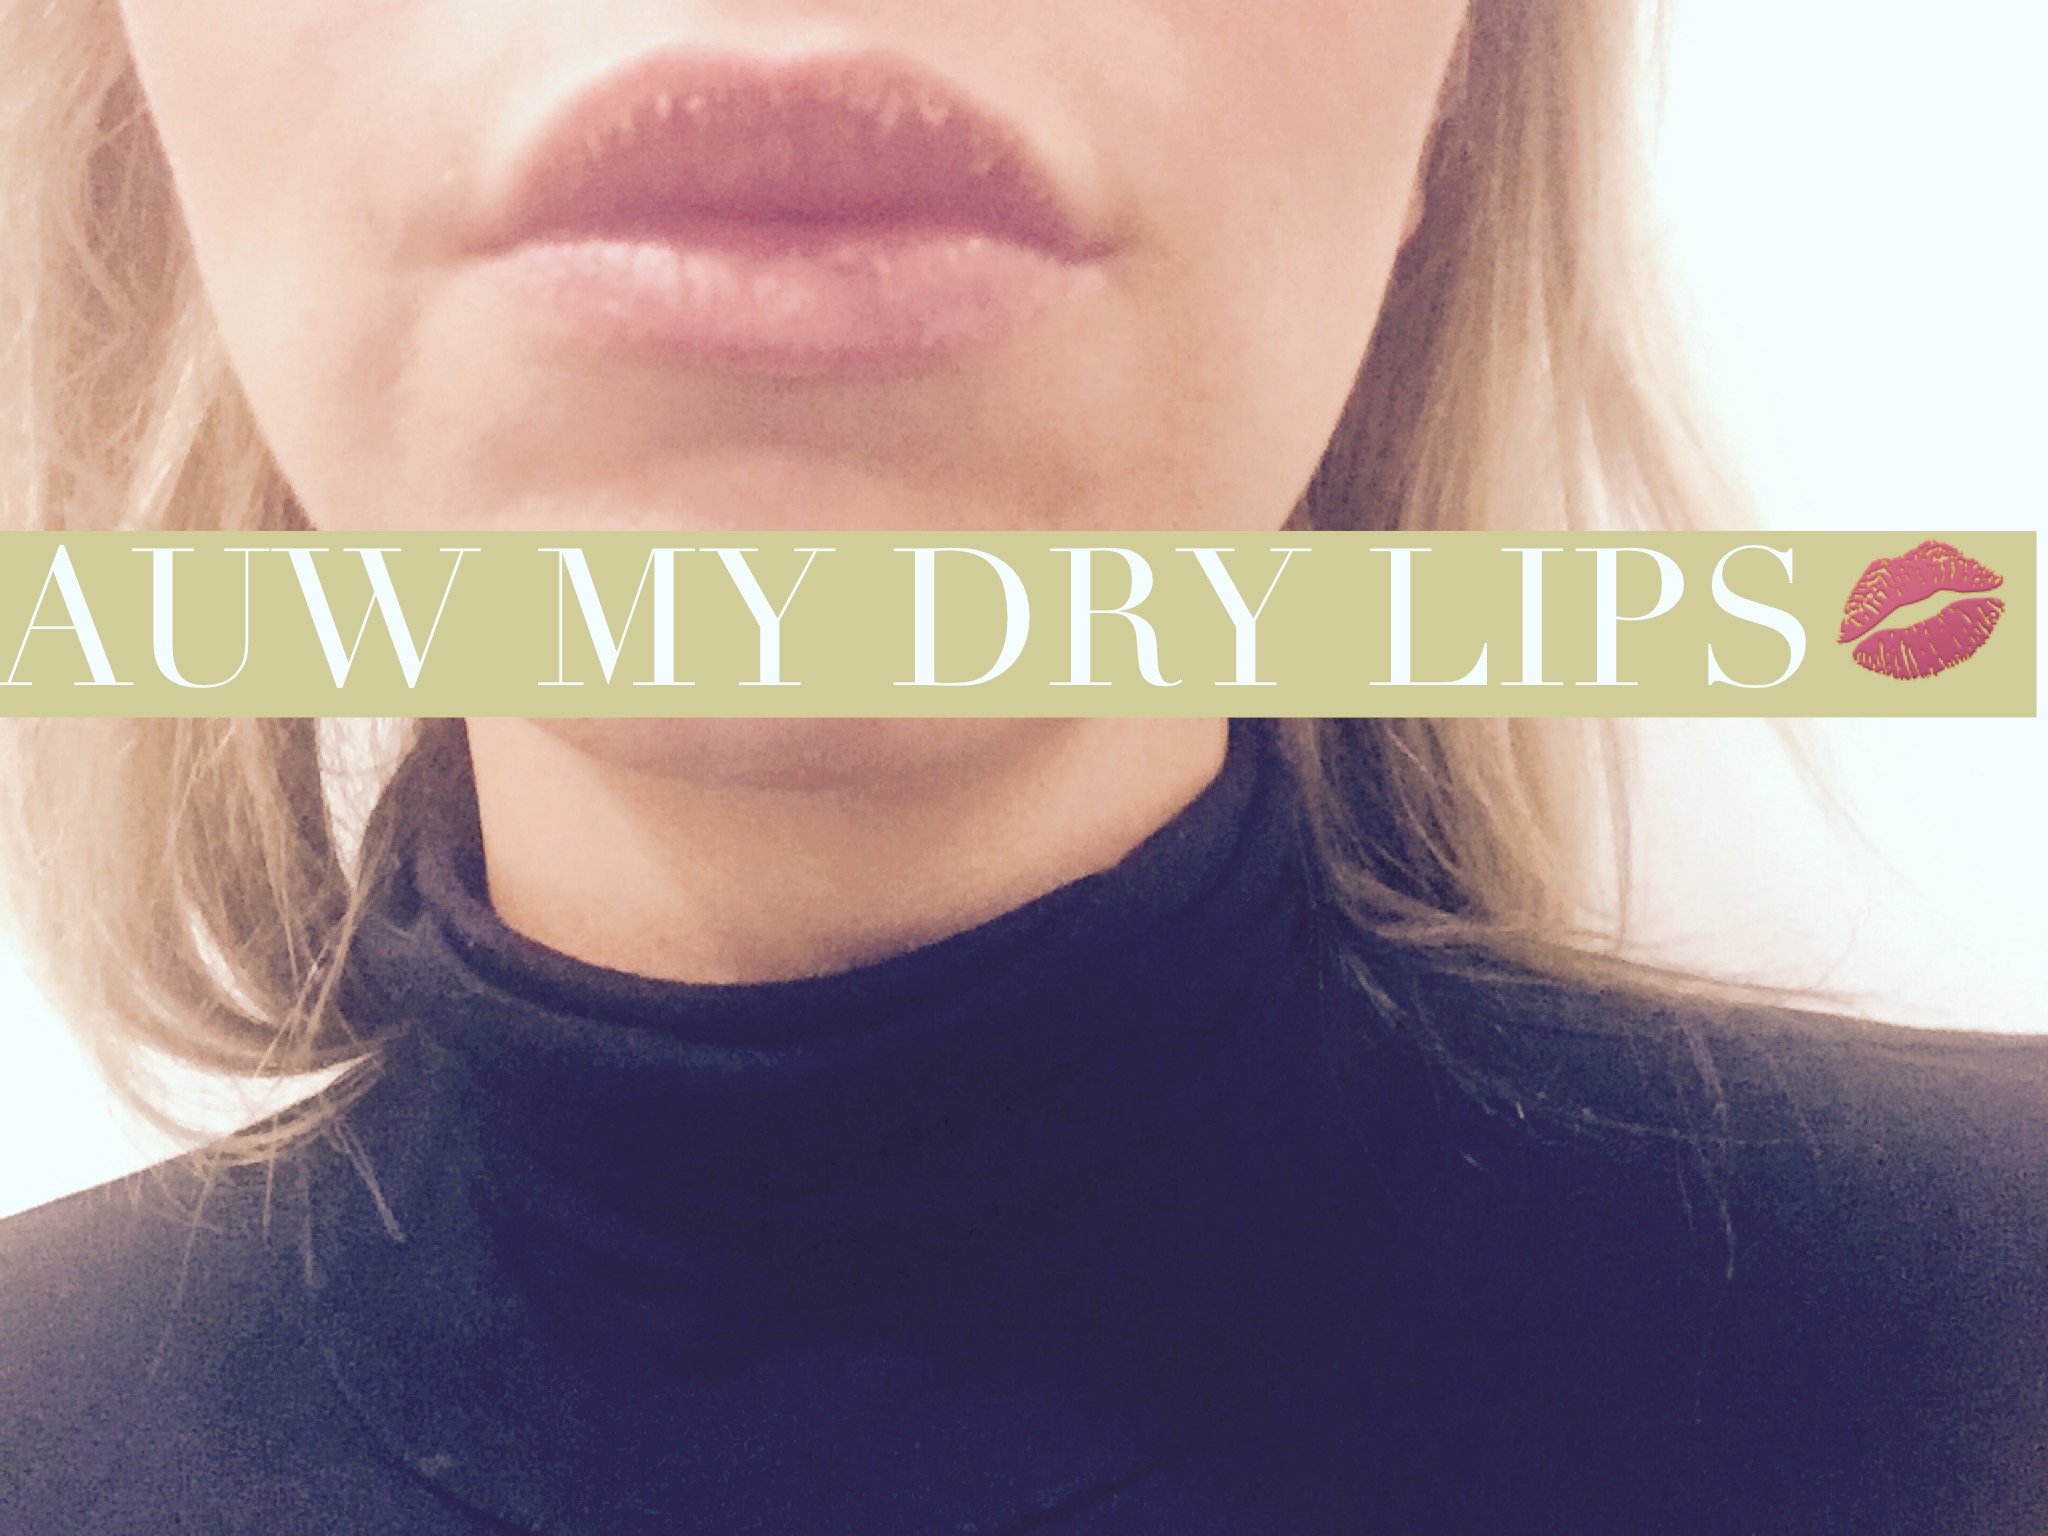 modus Implementeren diefstal DIY | Last van droge lippen? Maak zelf sugarscrub